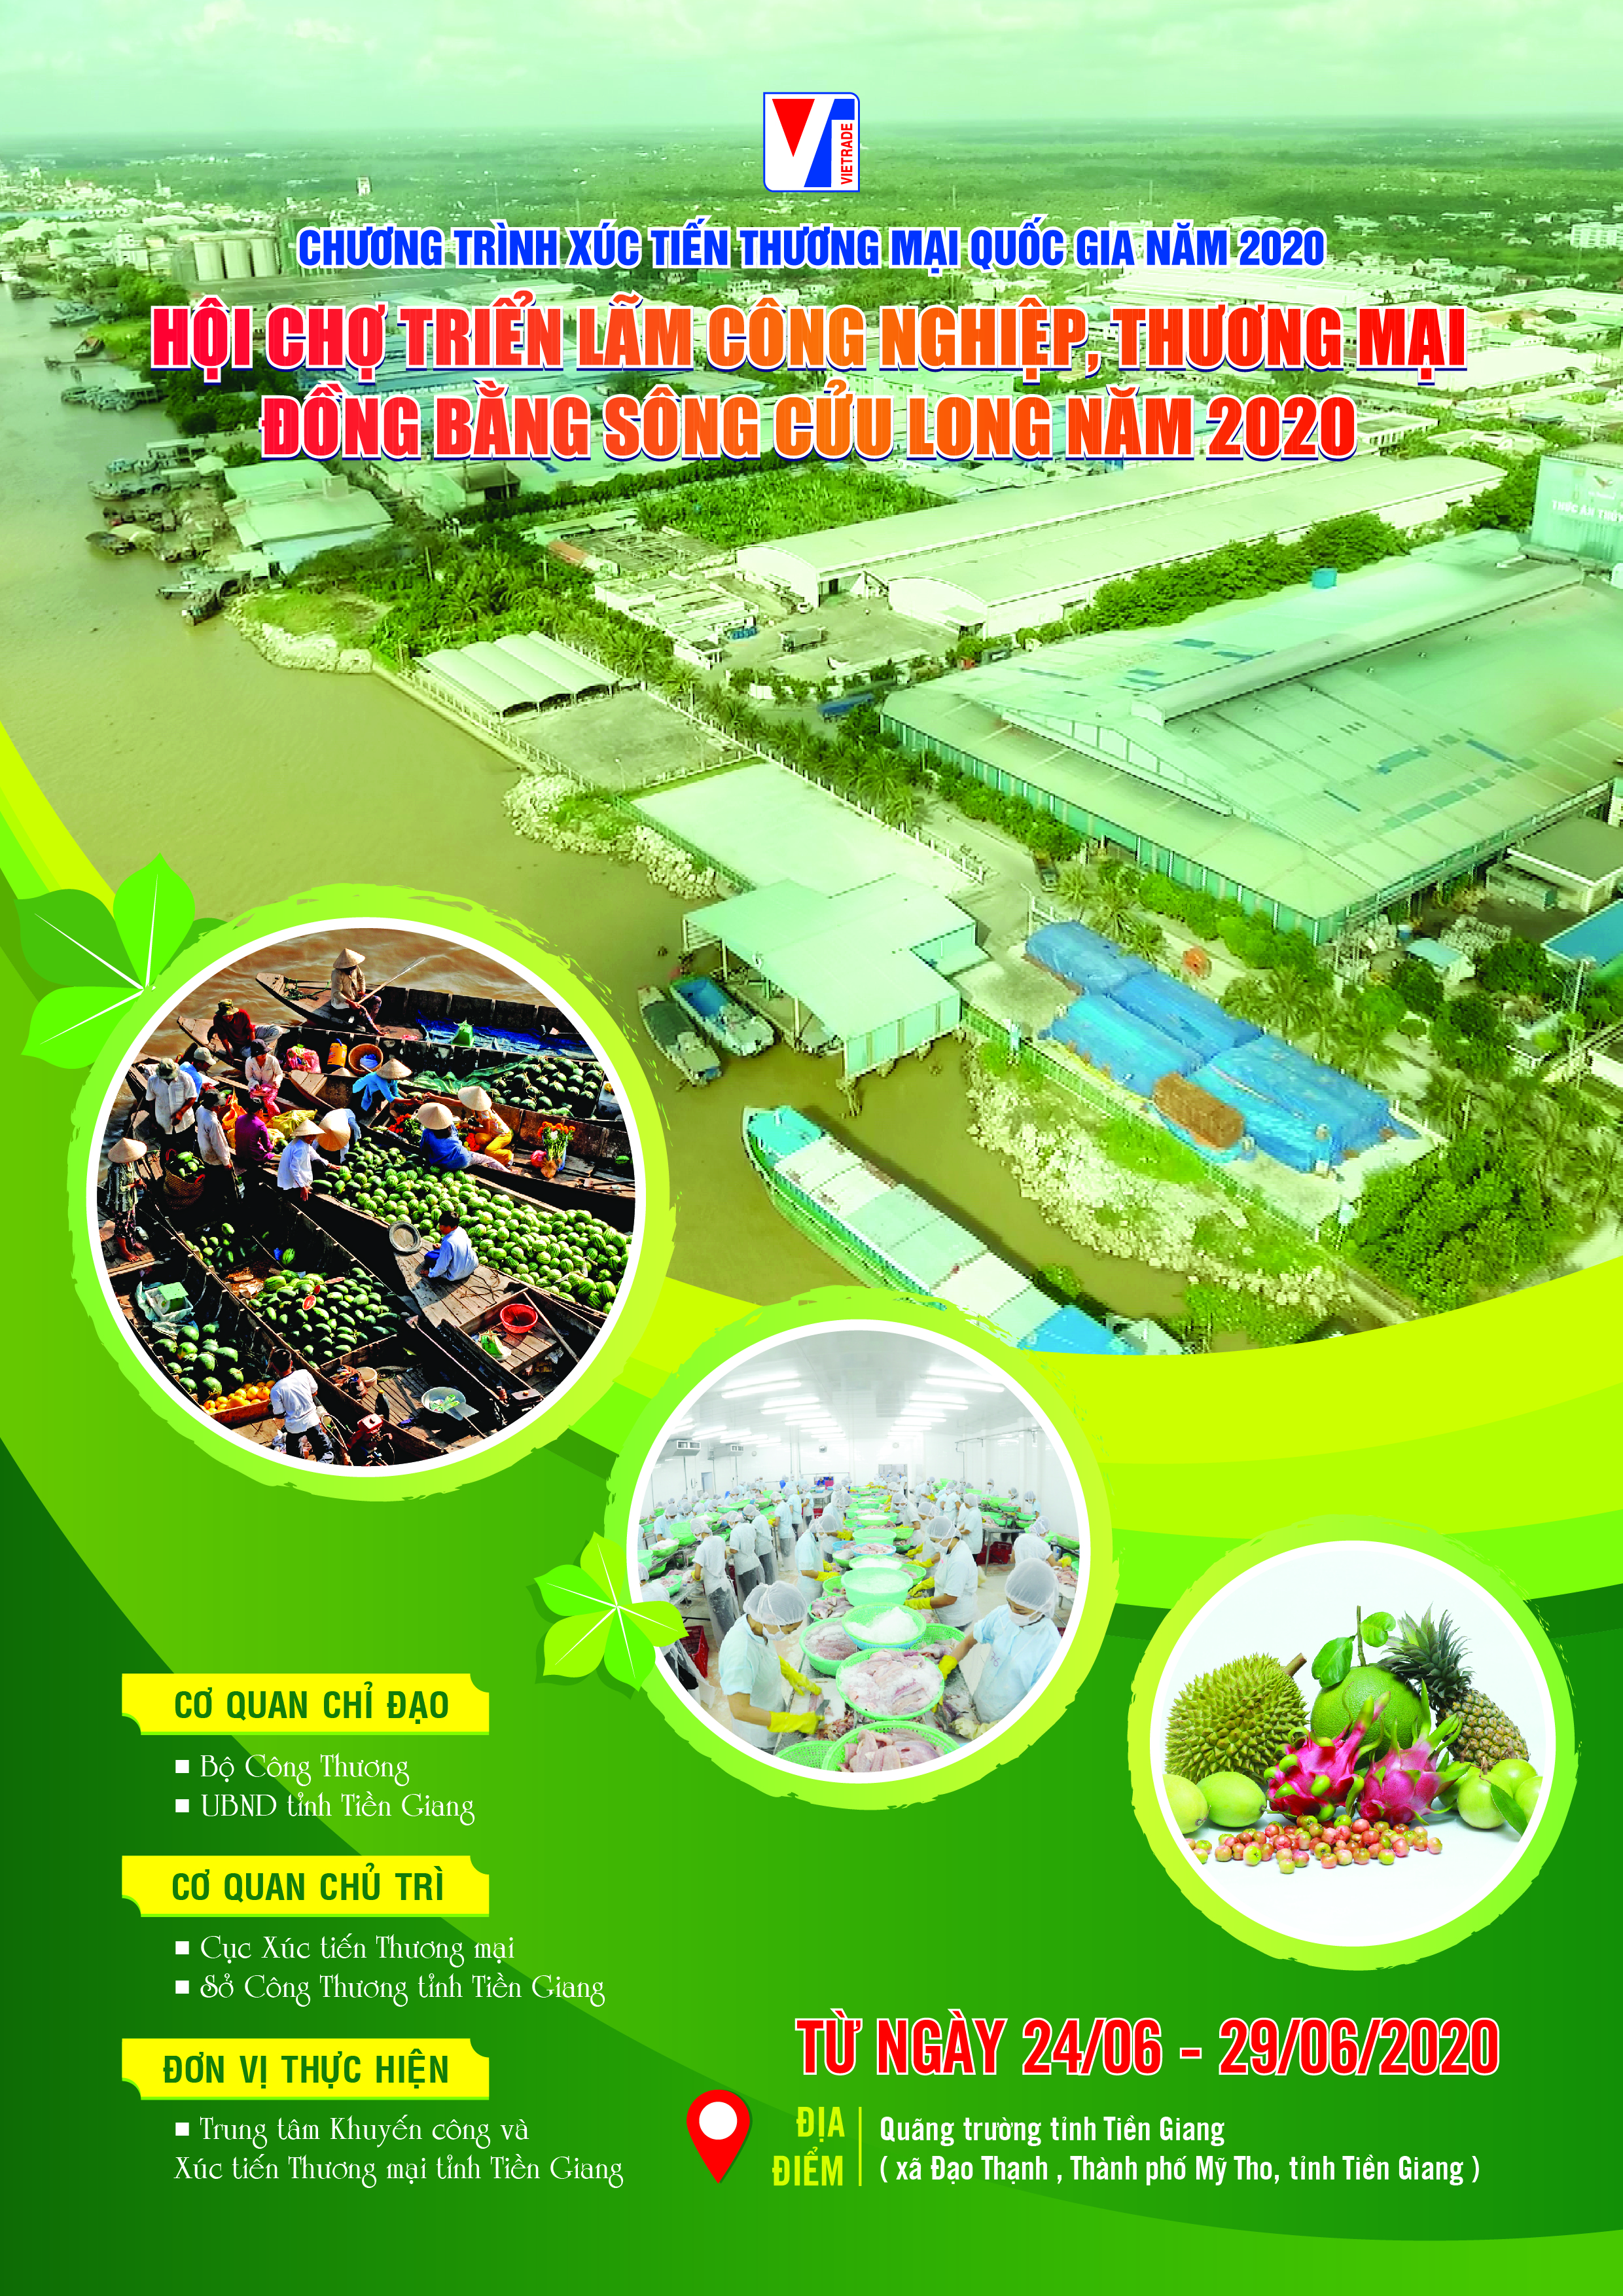 Mời tham gia Hội chợ triển lãm Công nghiệp, Thương mại Đồng bằng sông Cửu Long năm 2020